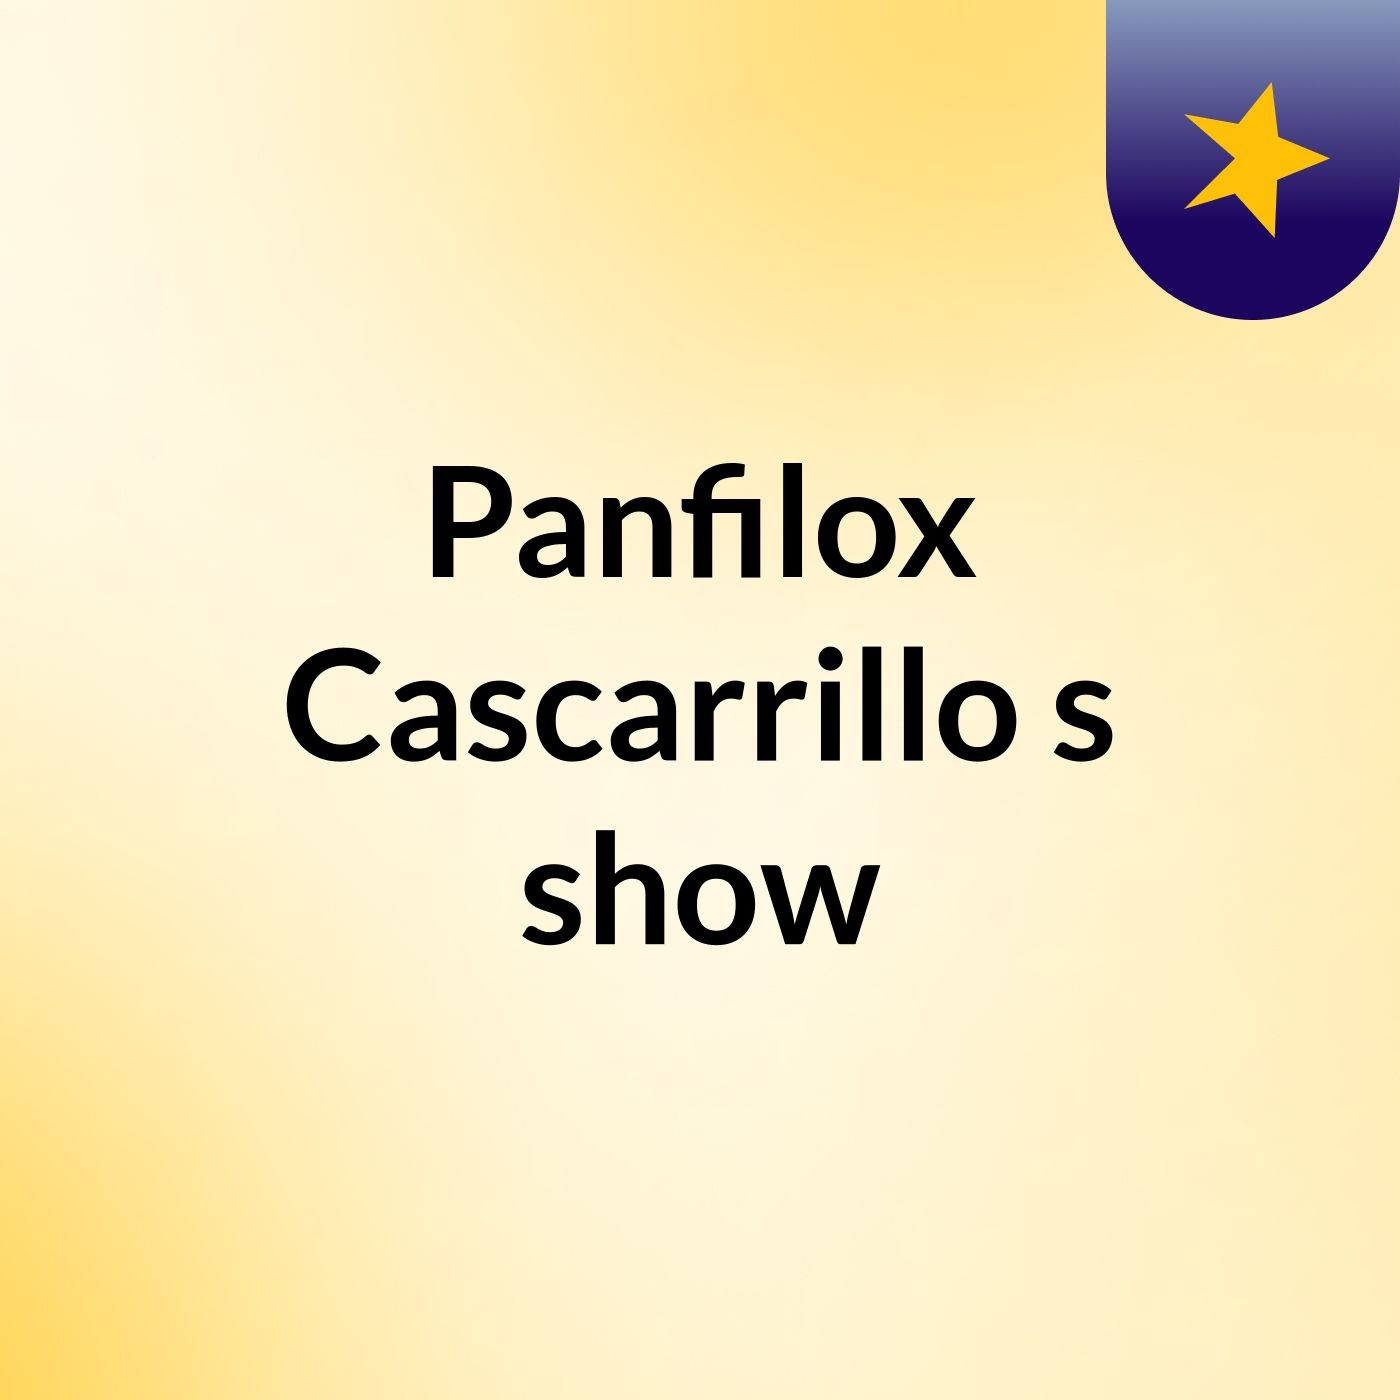 Panfilox Cascarrillo's show